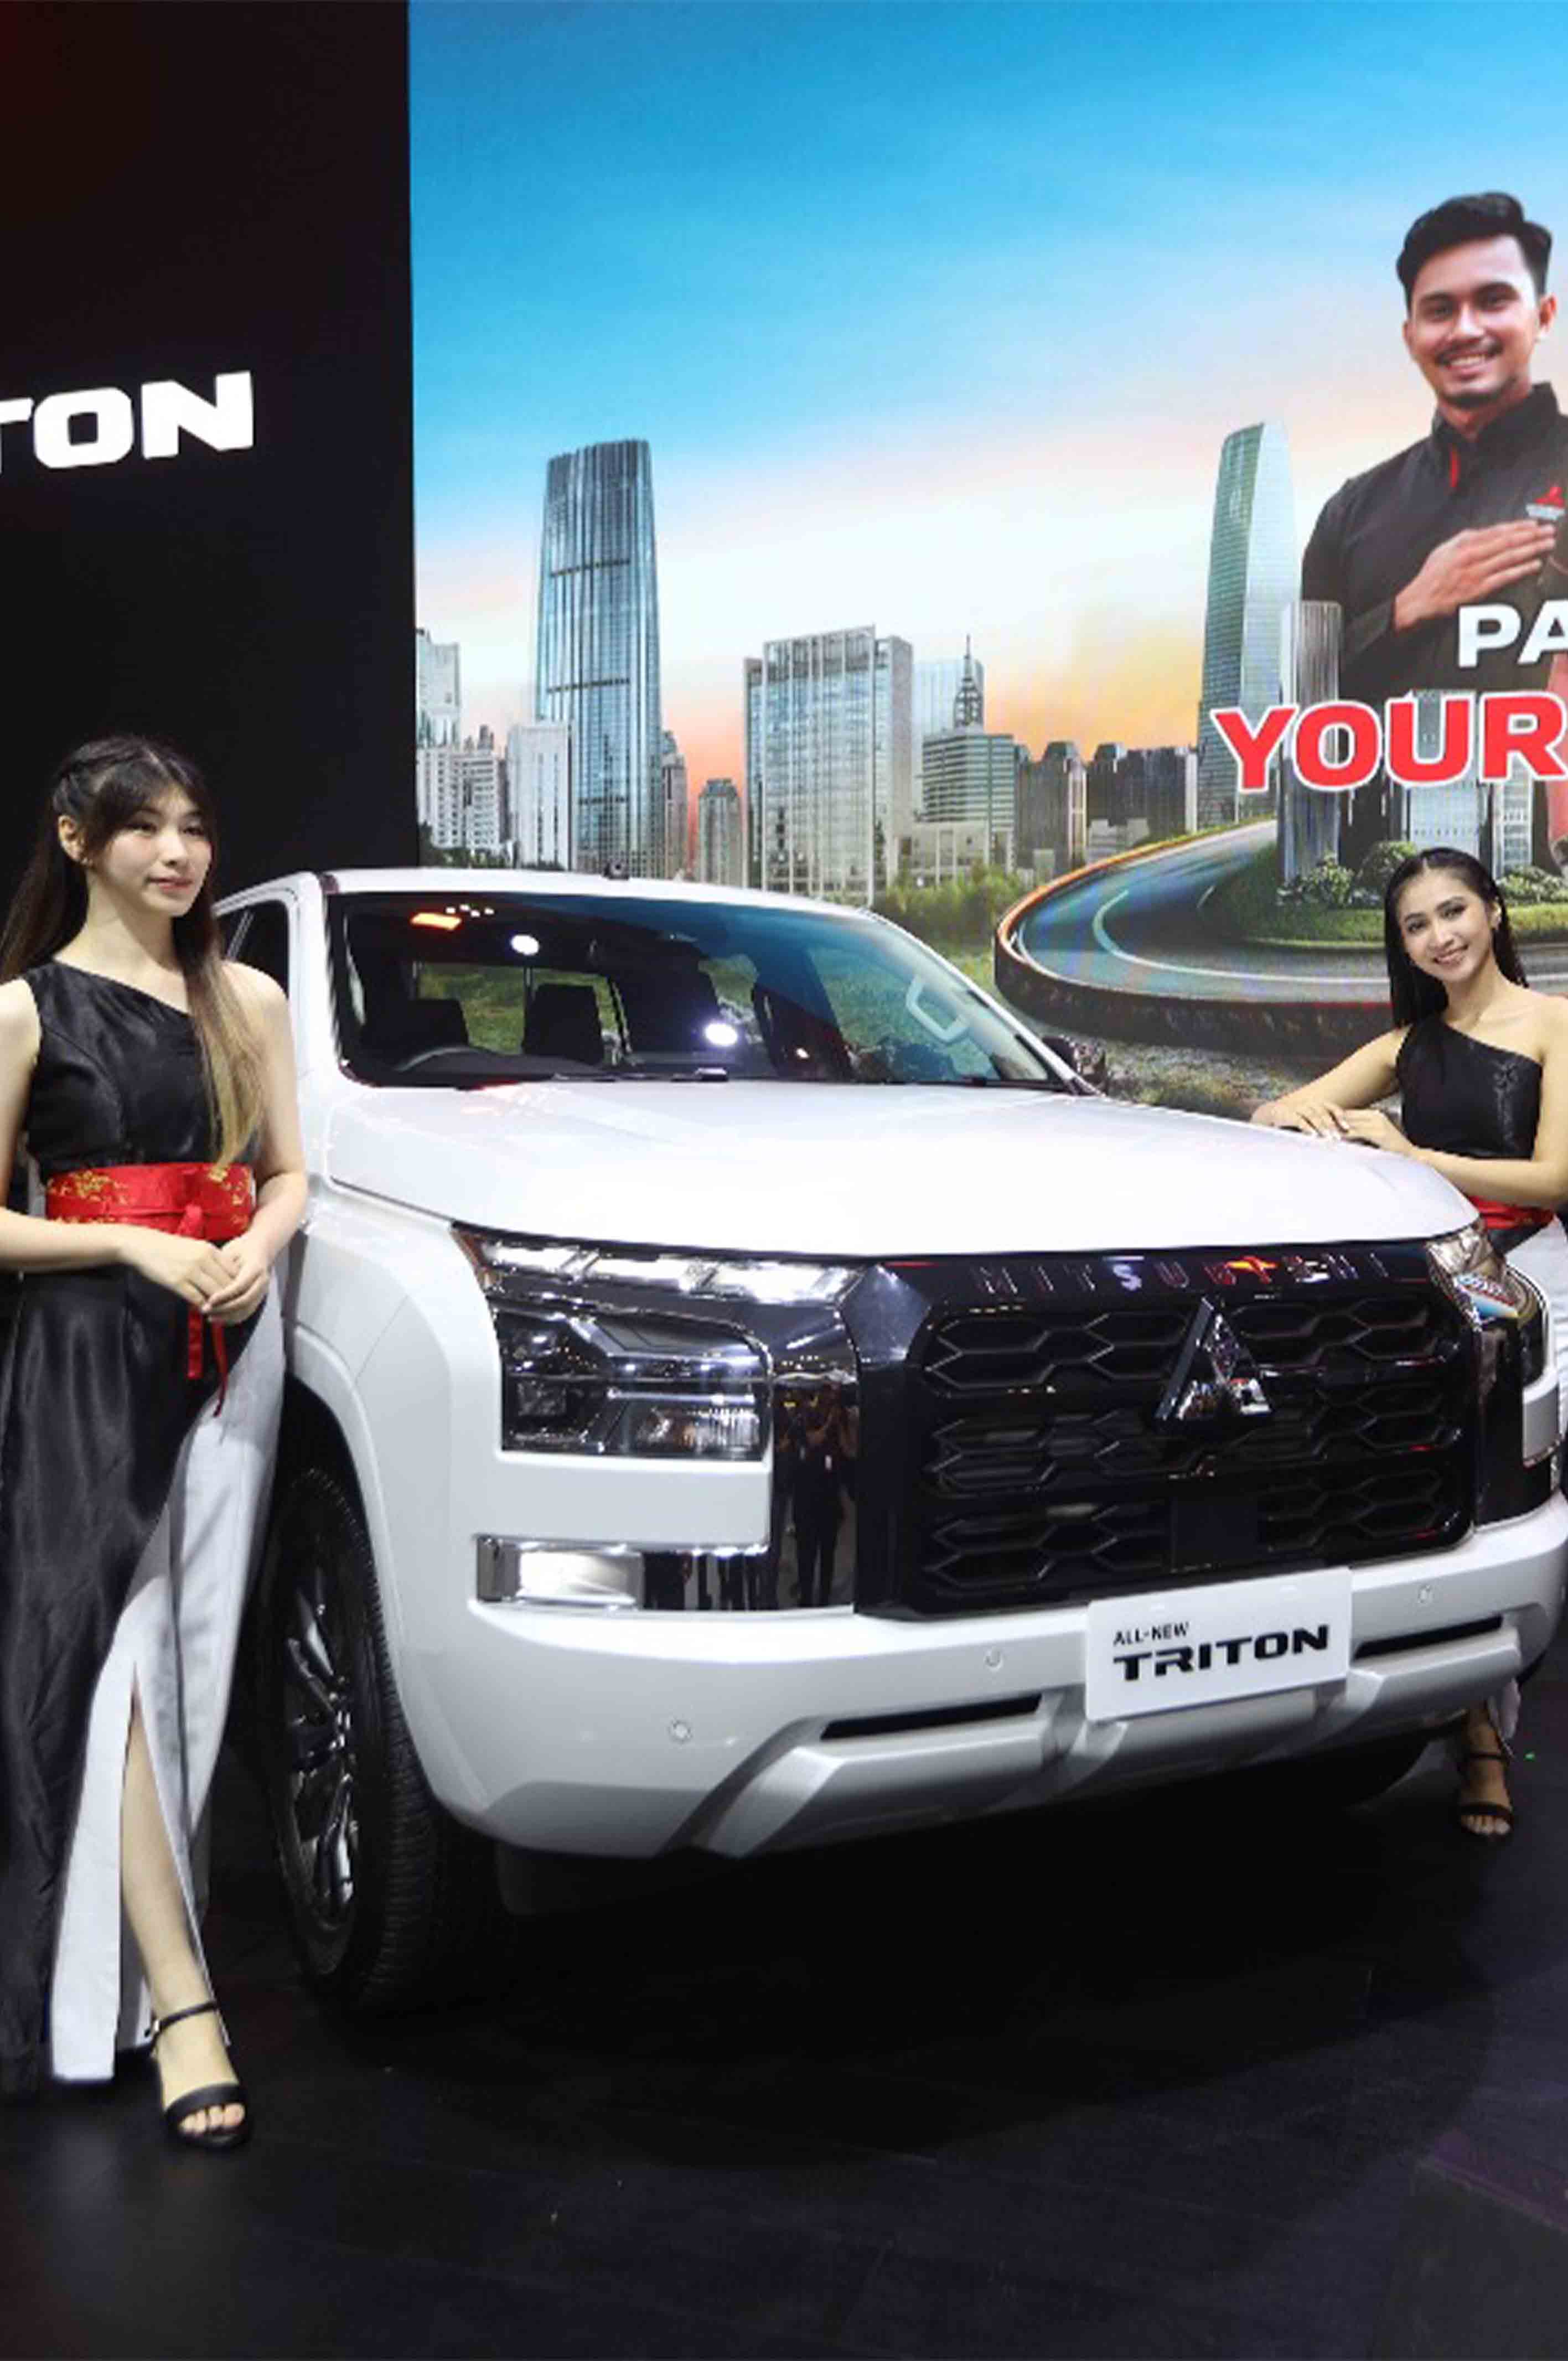 All New Mitsubishi Triton, Tangguh Sebagai Mitra Bisnis dan Berpetualang